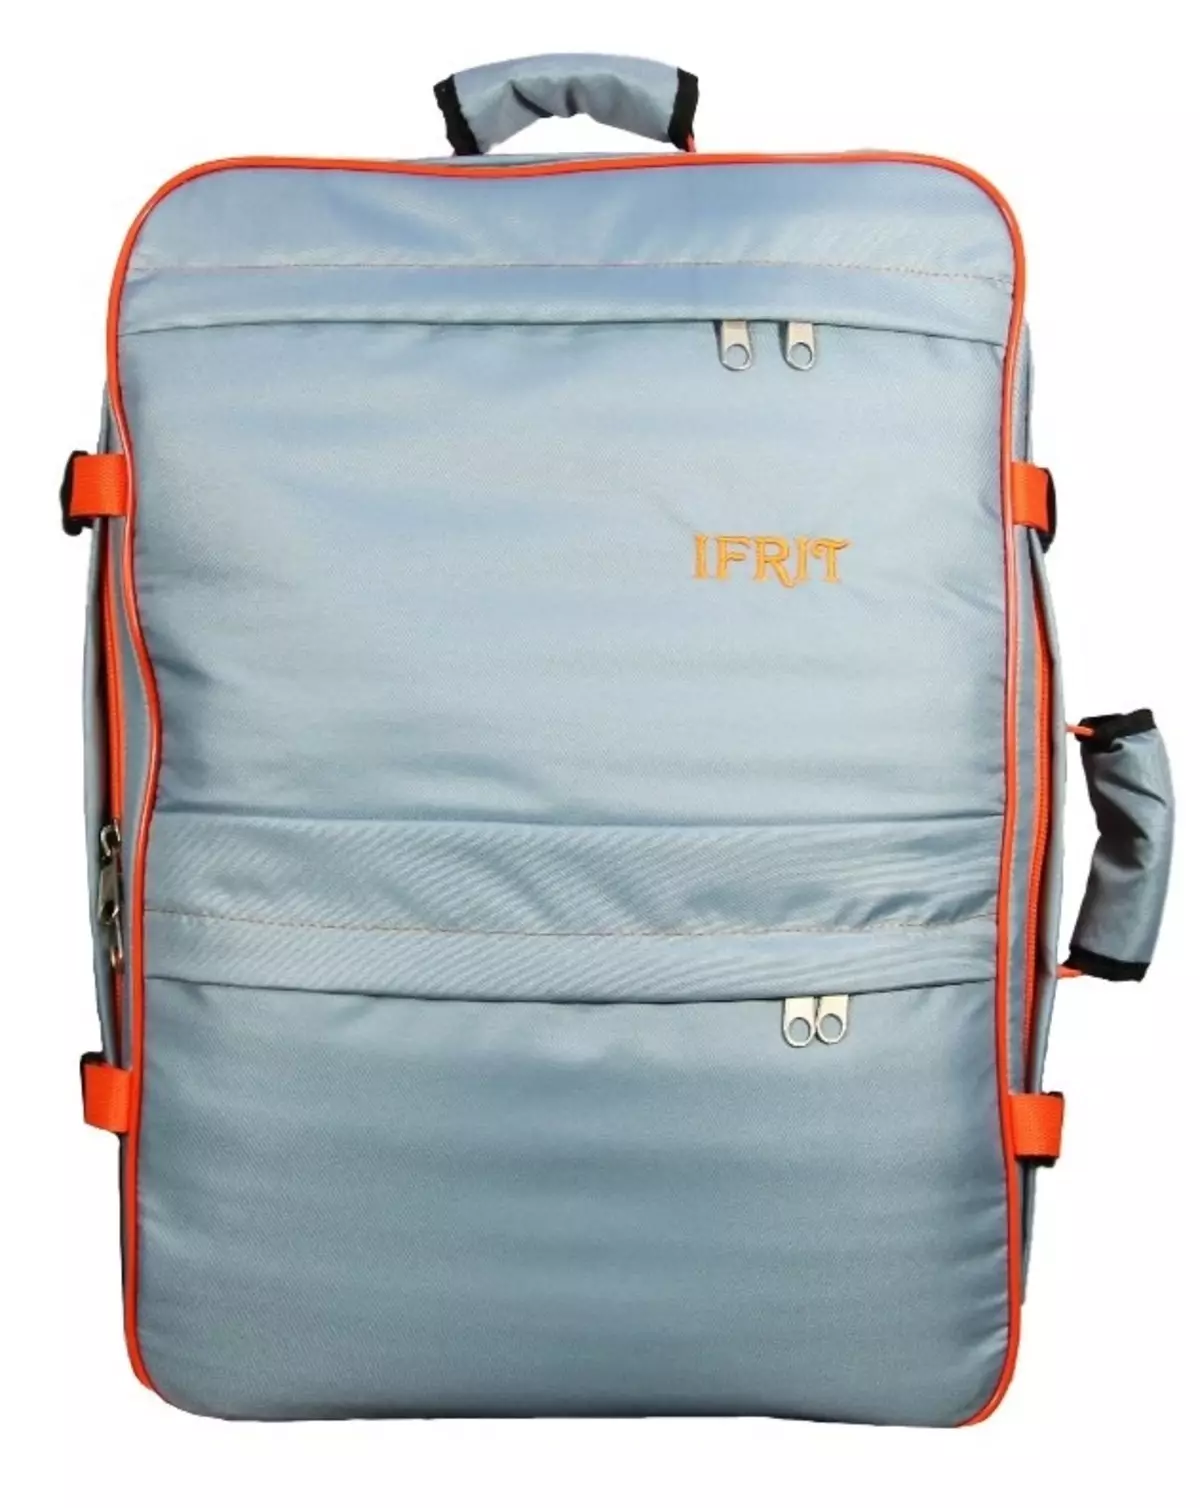 ხელის ჩანთა backpack: ითვლება backpack მოგზაურობის სახელმძღვანელო loop თვითმფრინავი? ზომები. რა შეიძლება დაიბადოს და რა უნდა გაიაროს ბარგის? 15346_11